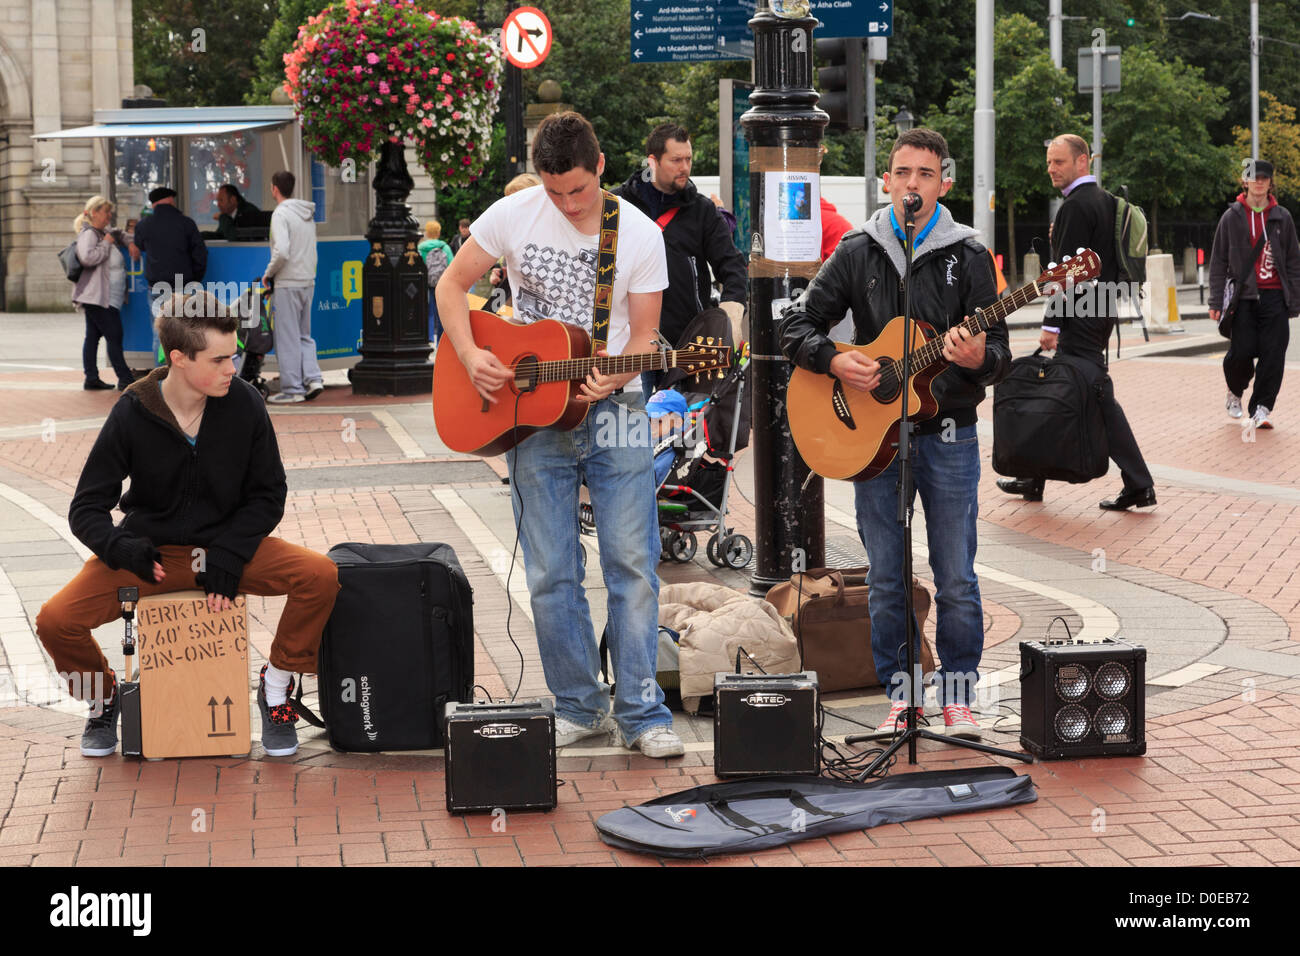 Scène de rue typique avec trois musiciens joueurs de guitare de la rue dans le centre-ville sur Grafton Street Dublin Eire Irlande Banque D'Images